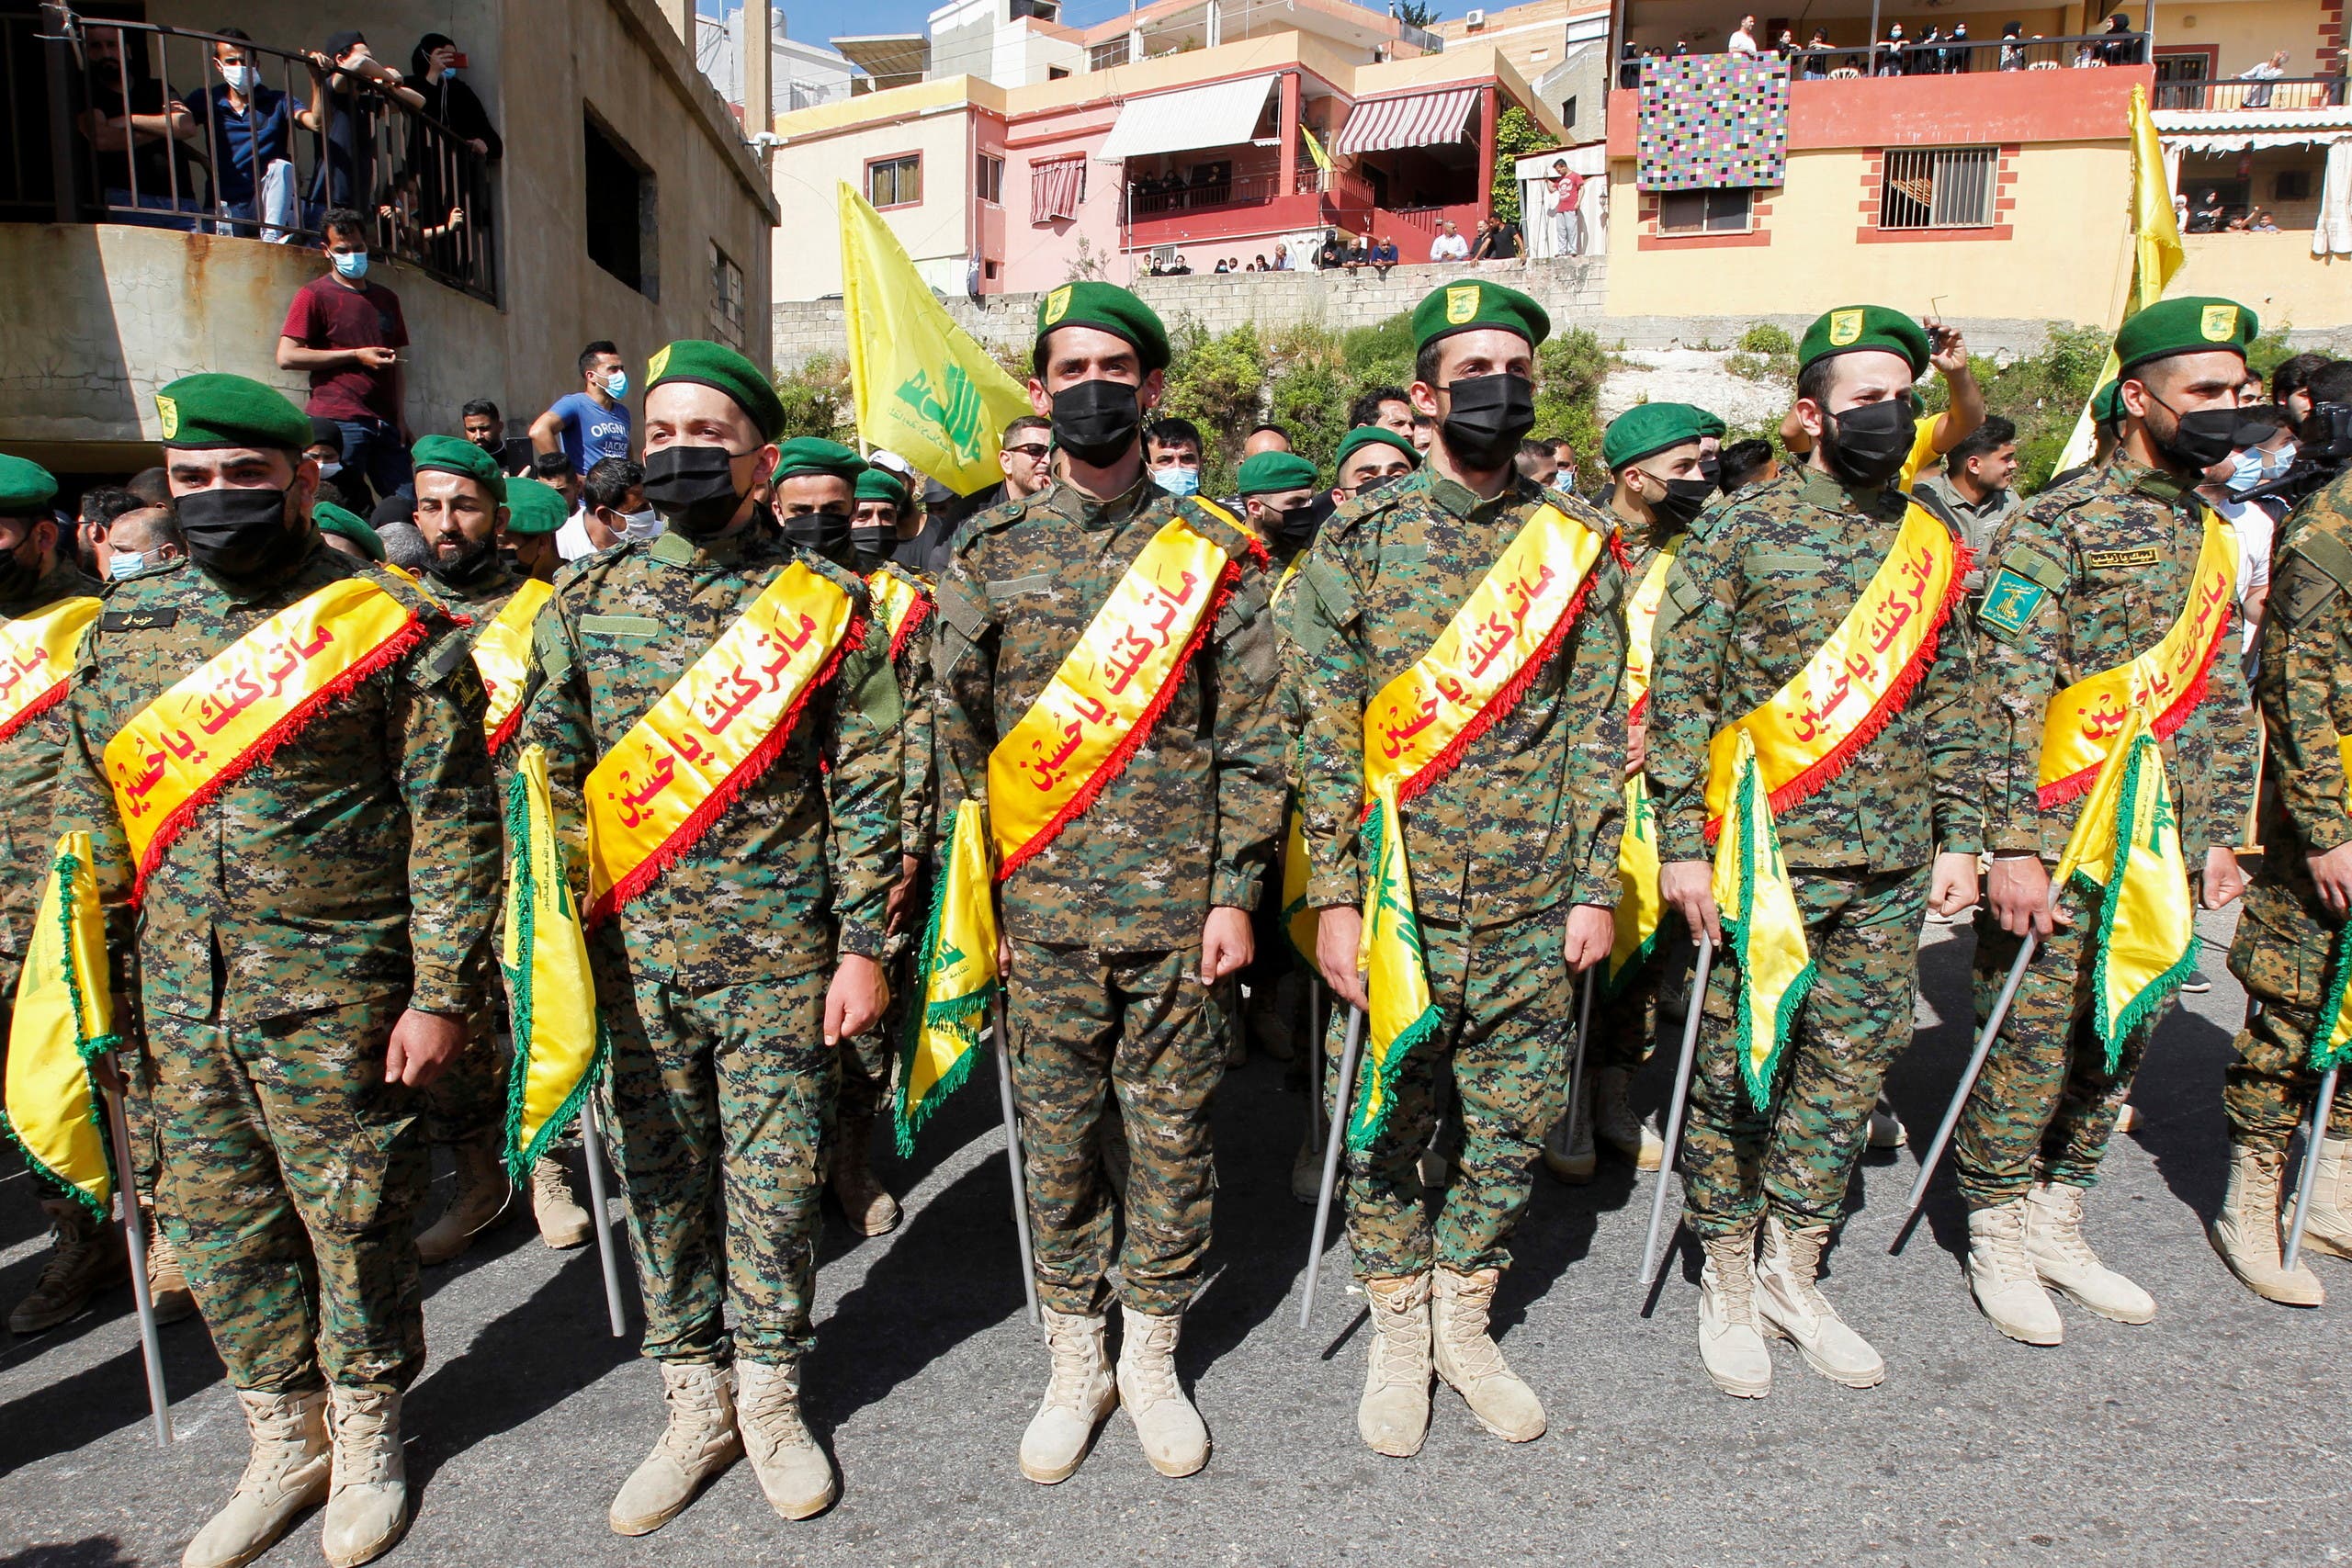 Members of Hezbollah in southern Lebanon